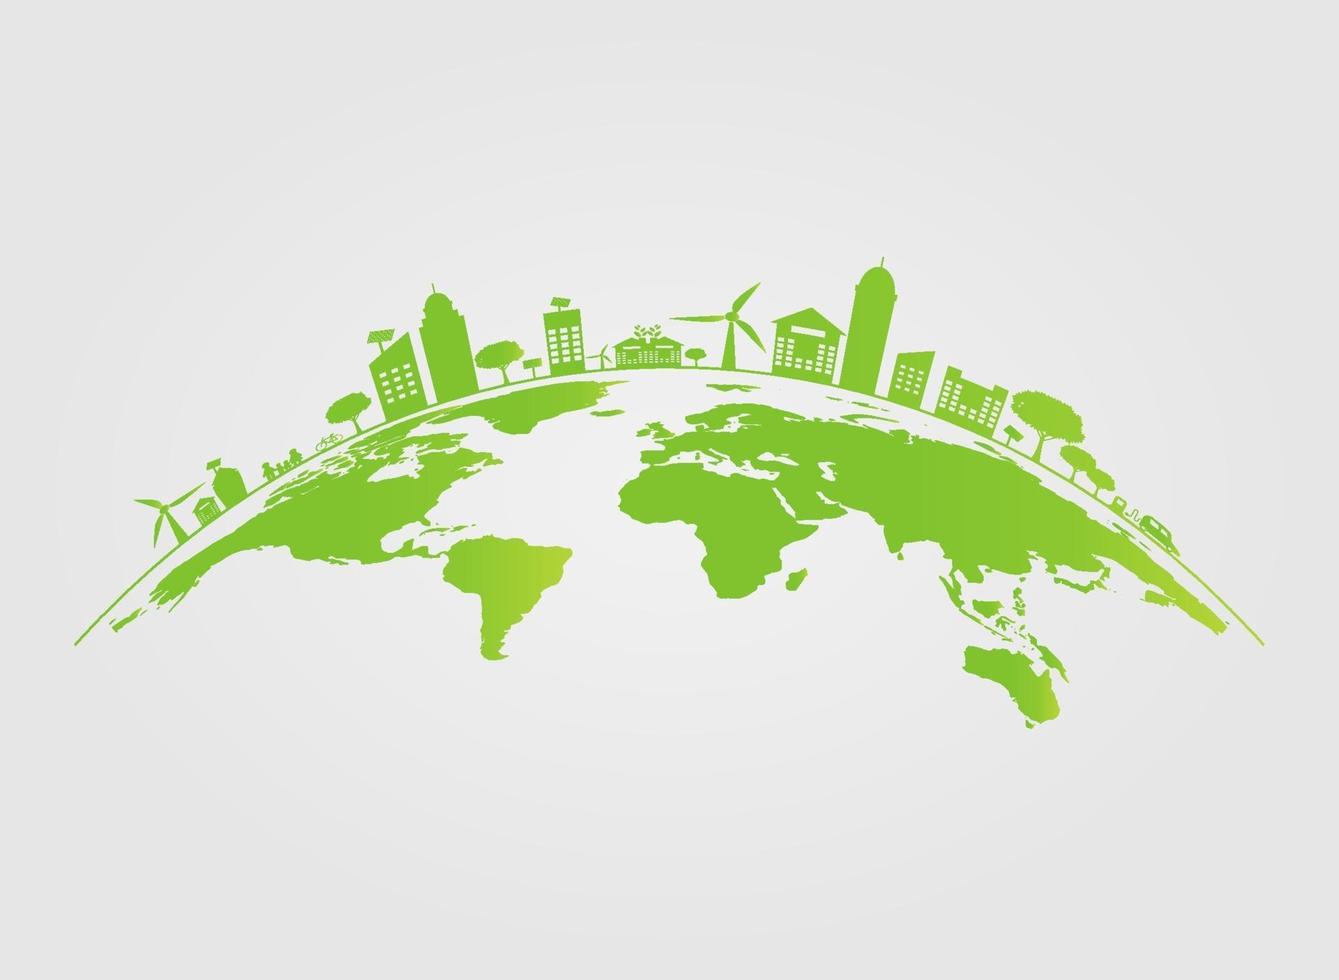 Ecologia.Cidades verdes ajudam o mundo com ideias de conceitos ecológicos. Ilustração em vetor